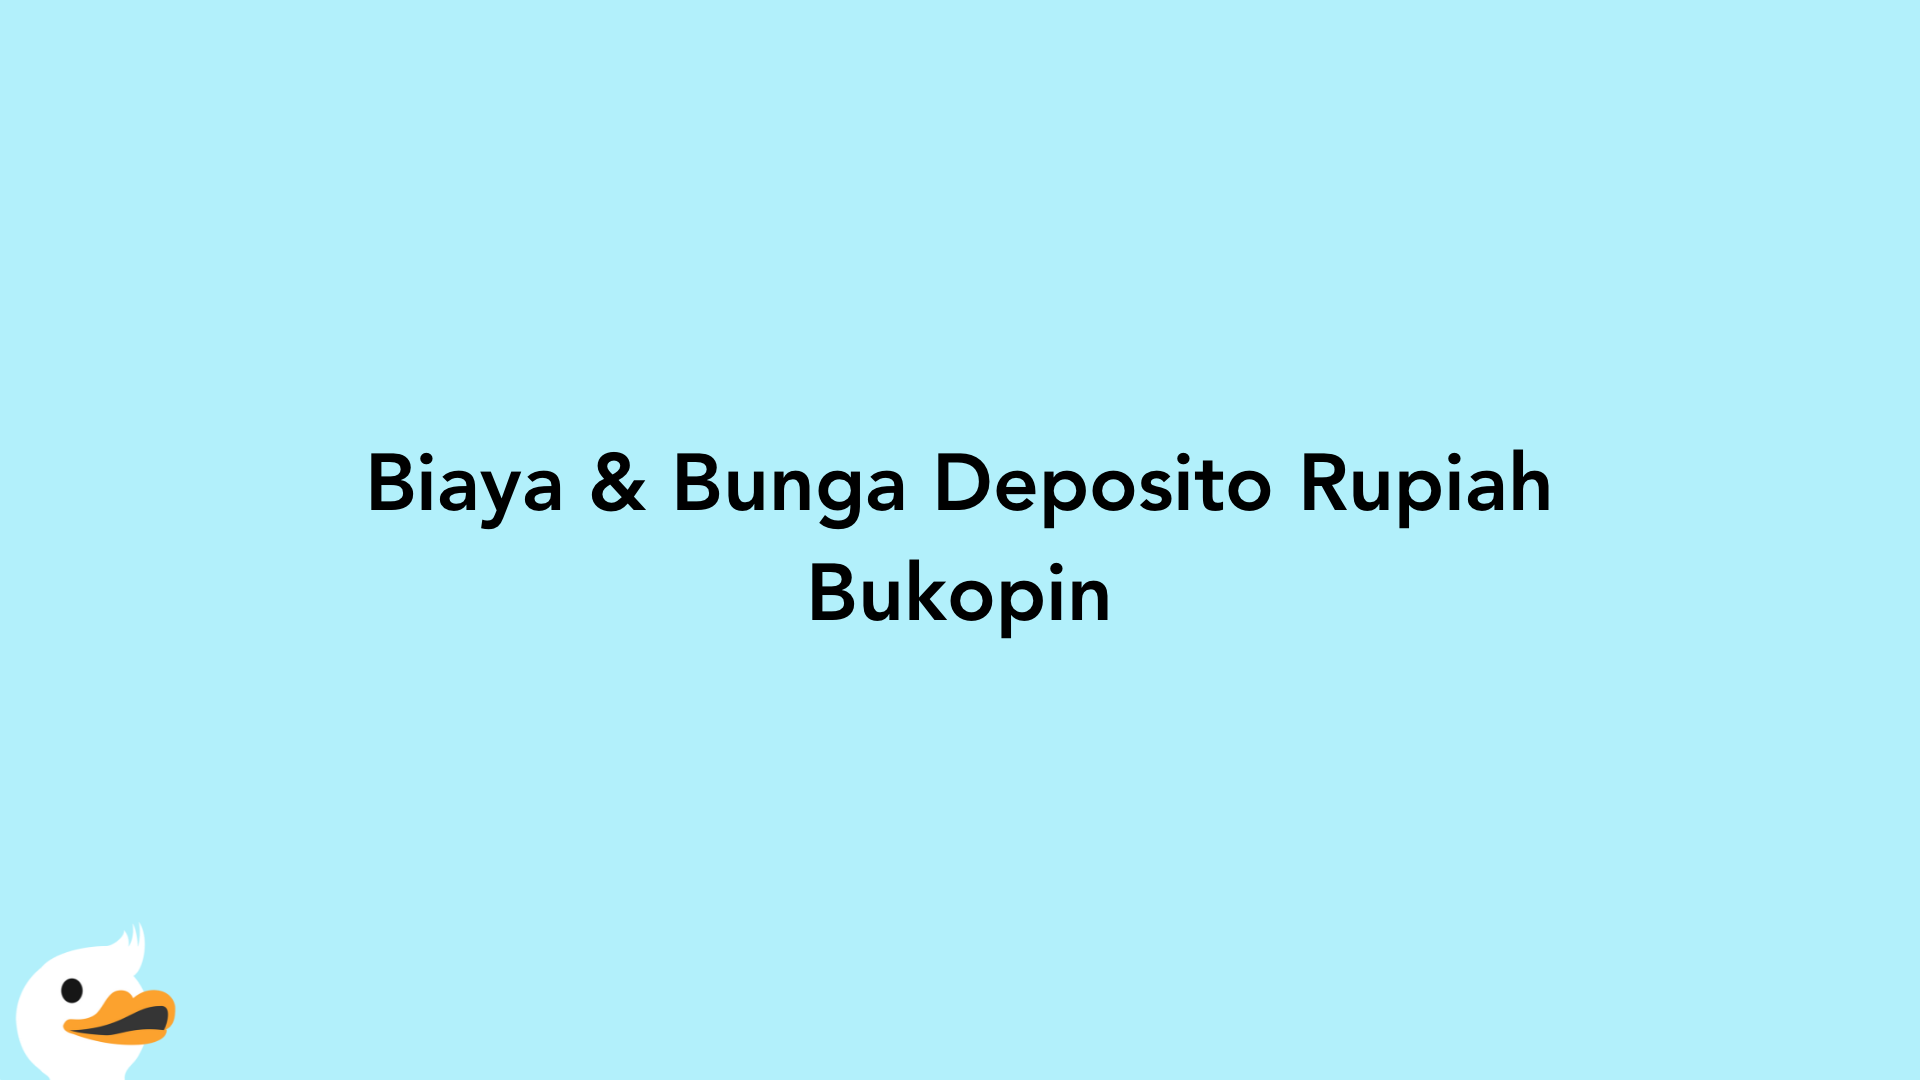 Biaya & Bunga Deposito Rupiah Bukopin